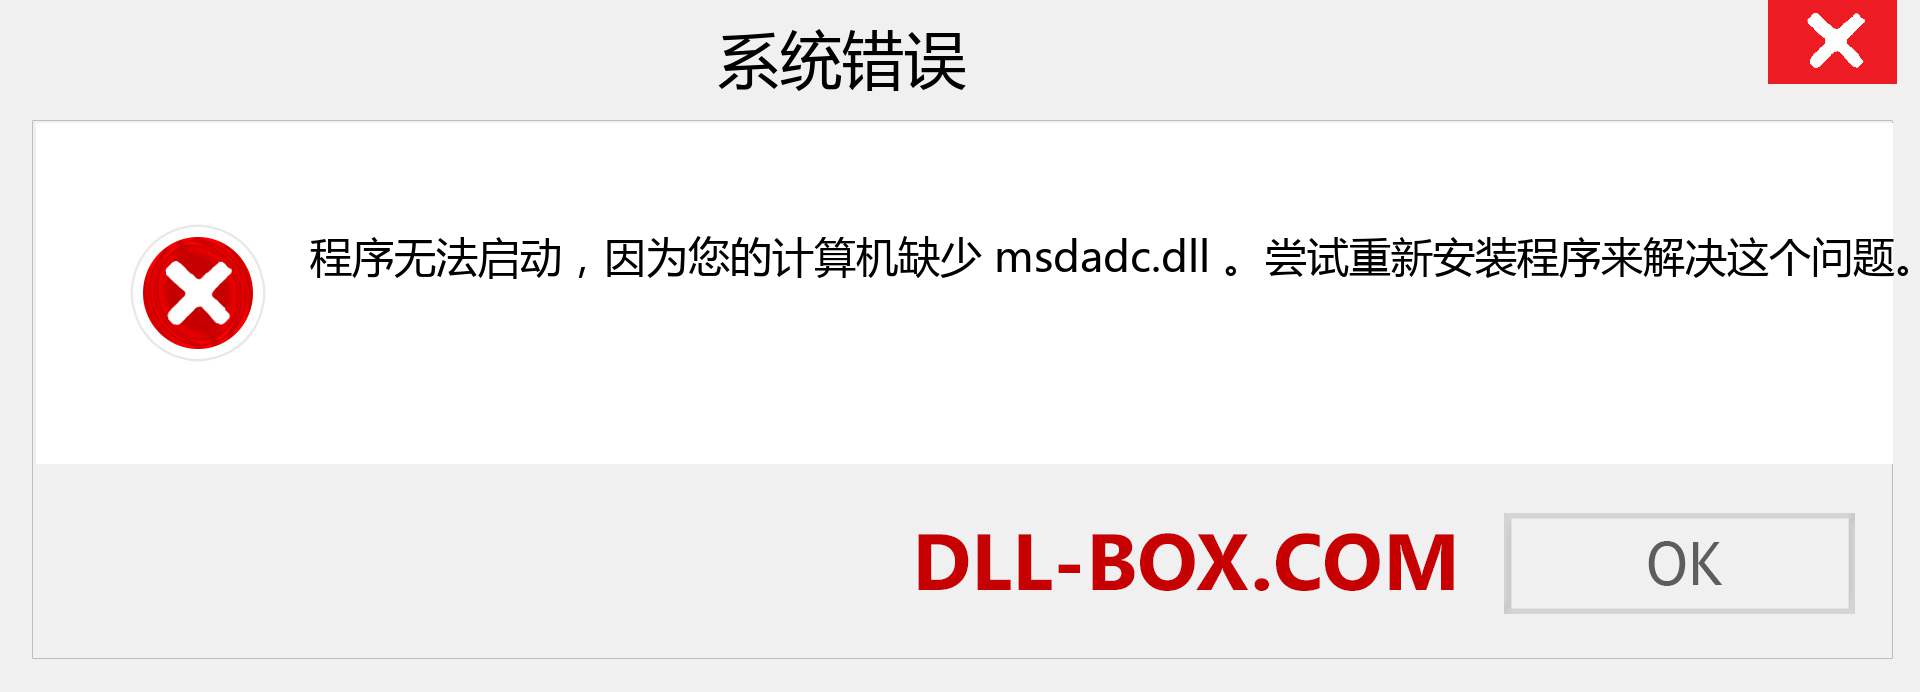 msdadc.dll 文件丢失？。 适用于 Windows 7、8、10 的下载 - 修复 Windows、照片、图像上的 msdadc dll 丢失错误